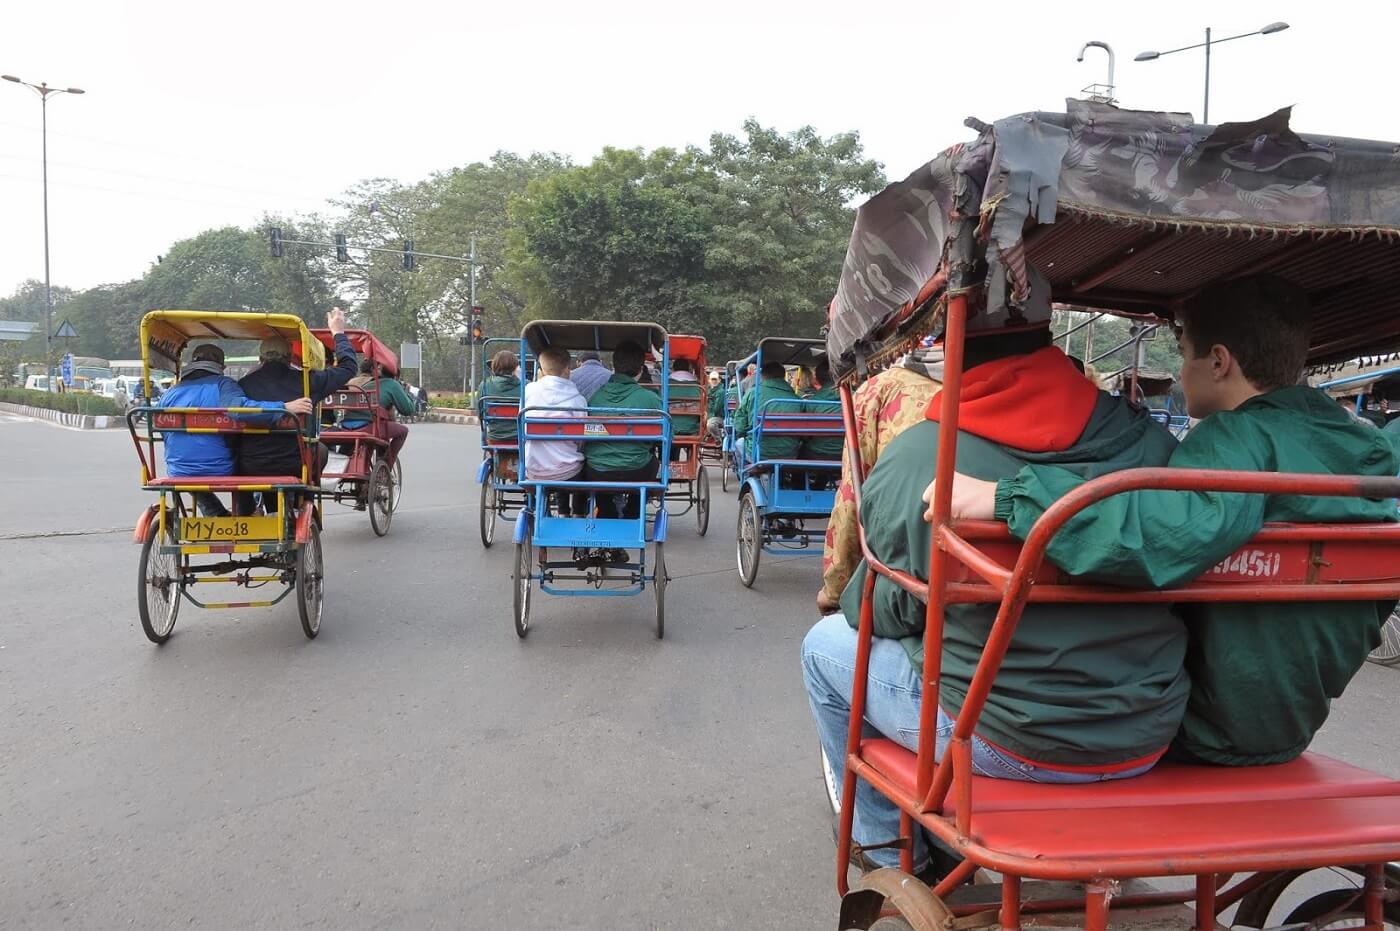 Rikshaw Ride at Delhi